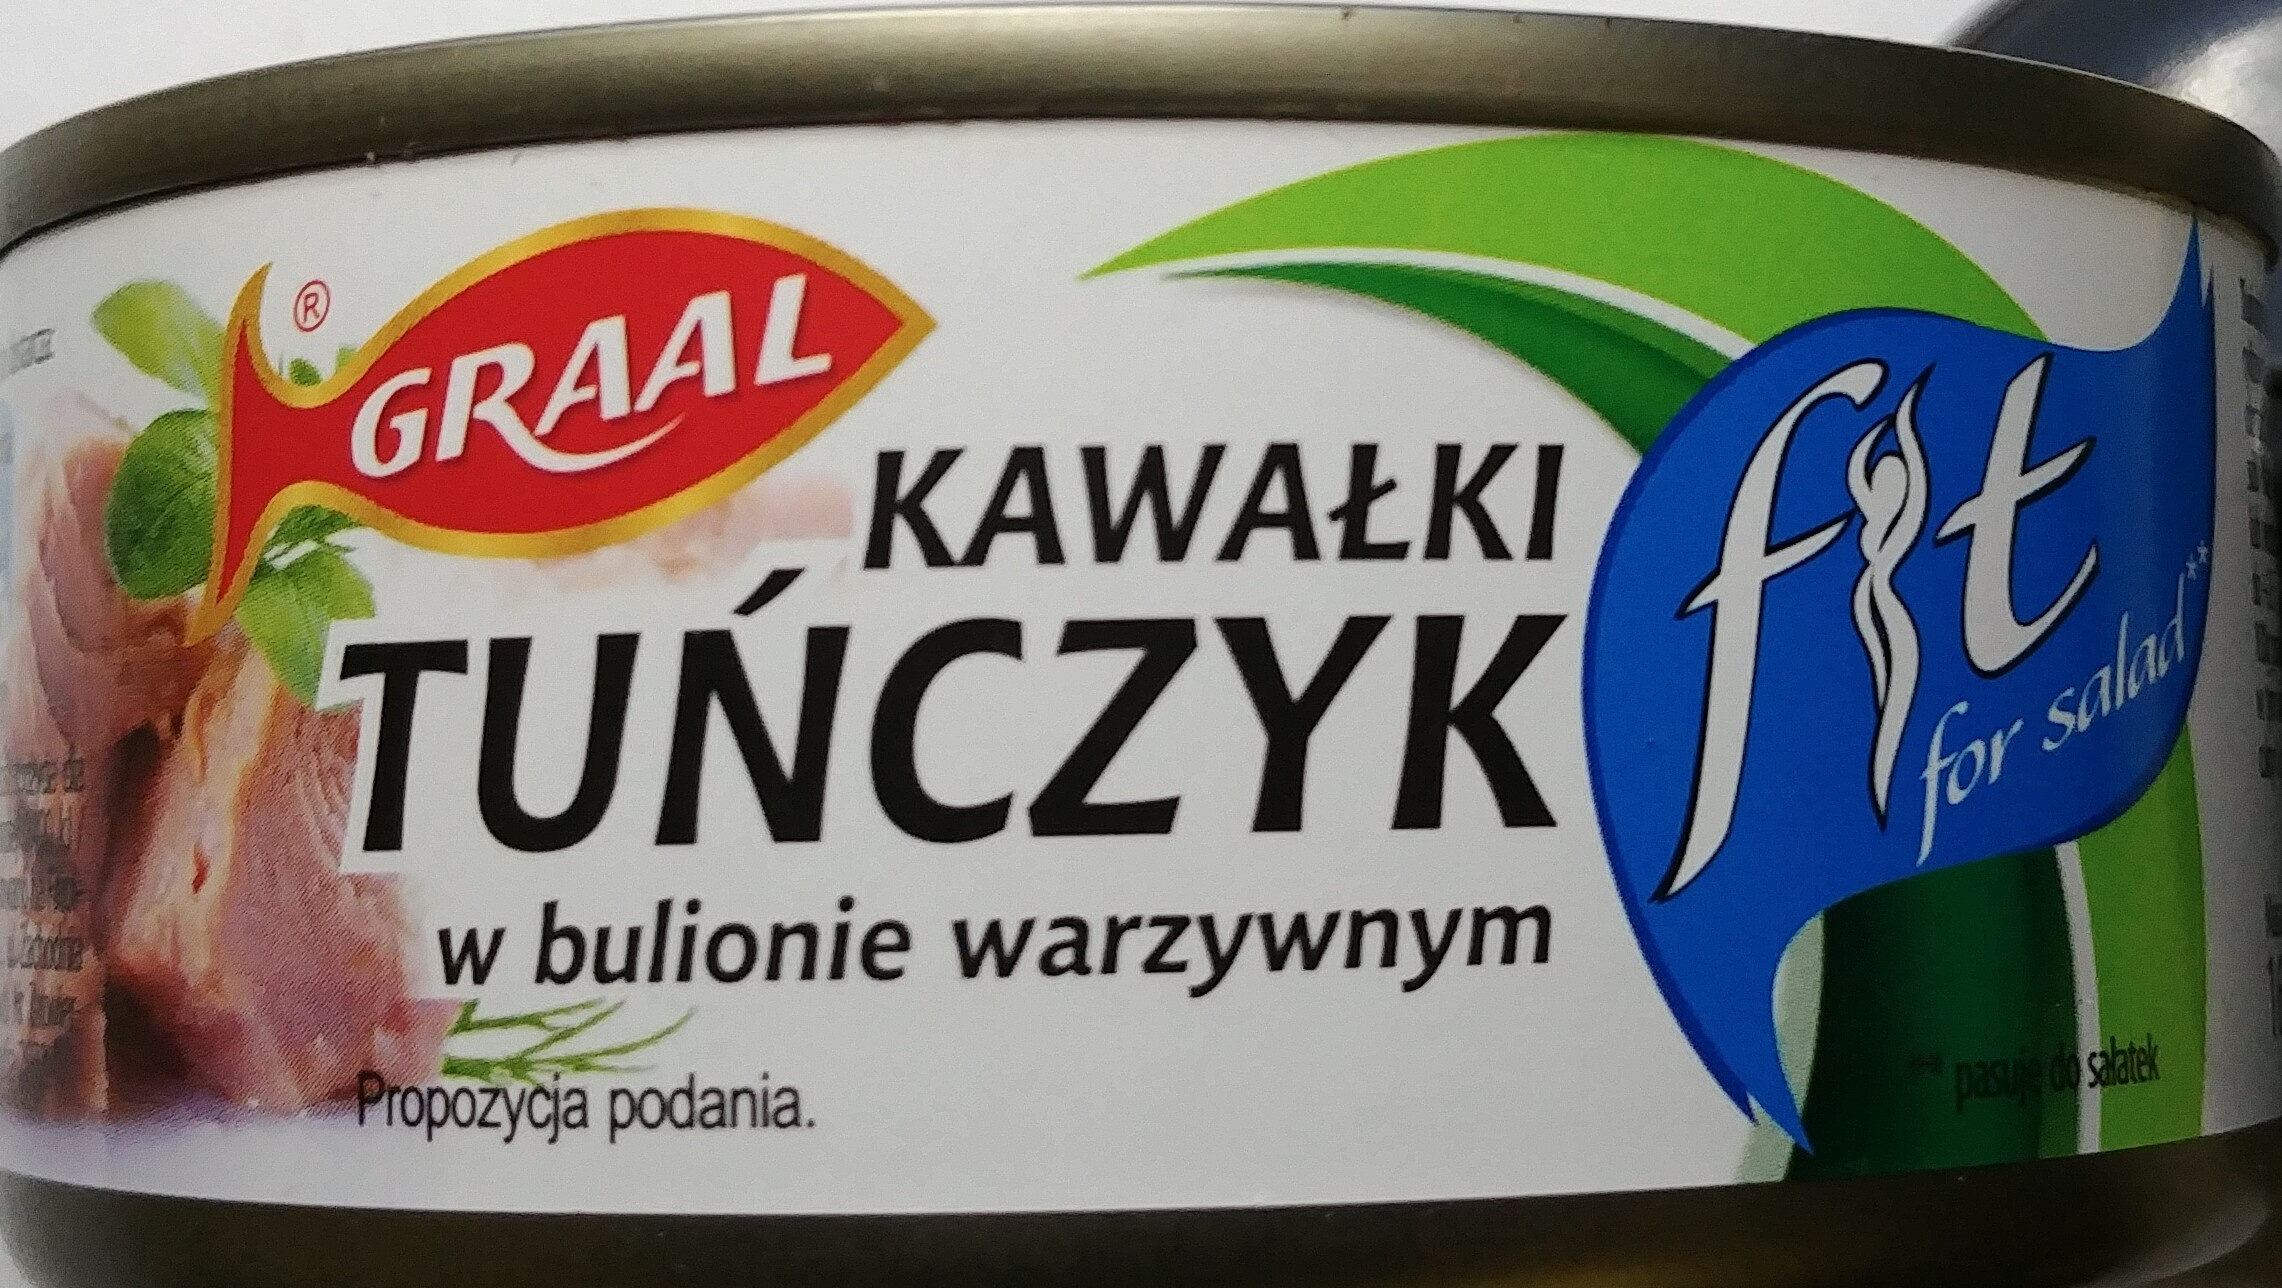 Tuńczyk kawałki w bulionie warzywnym. - Product - pl